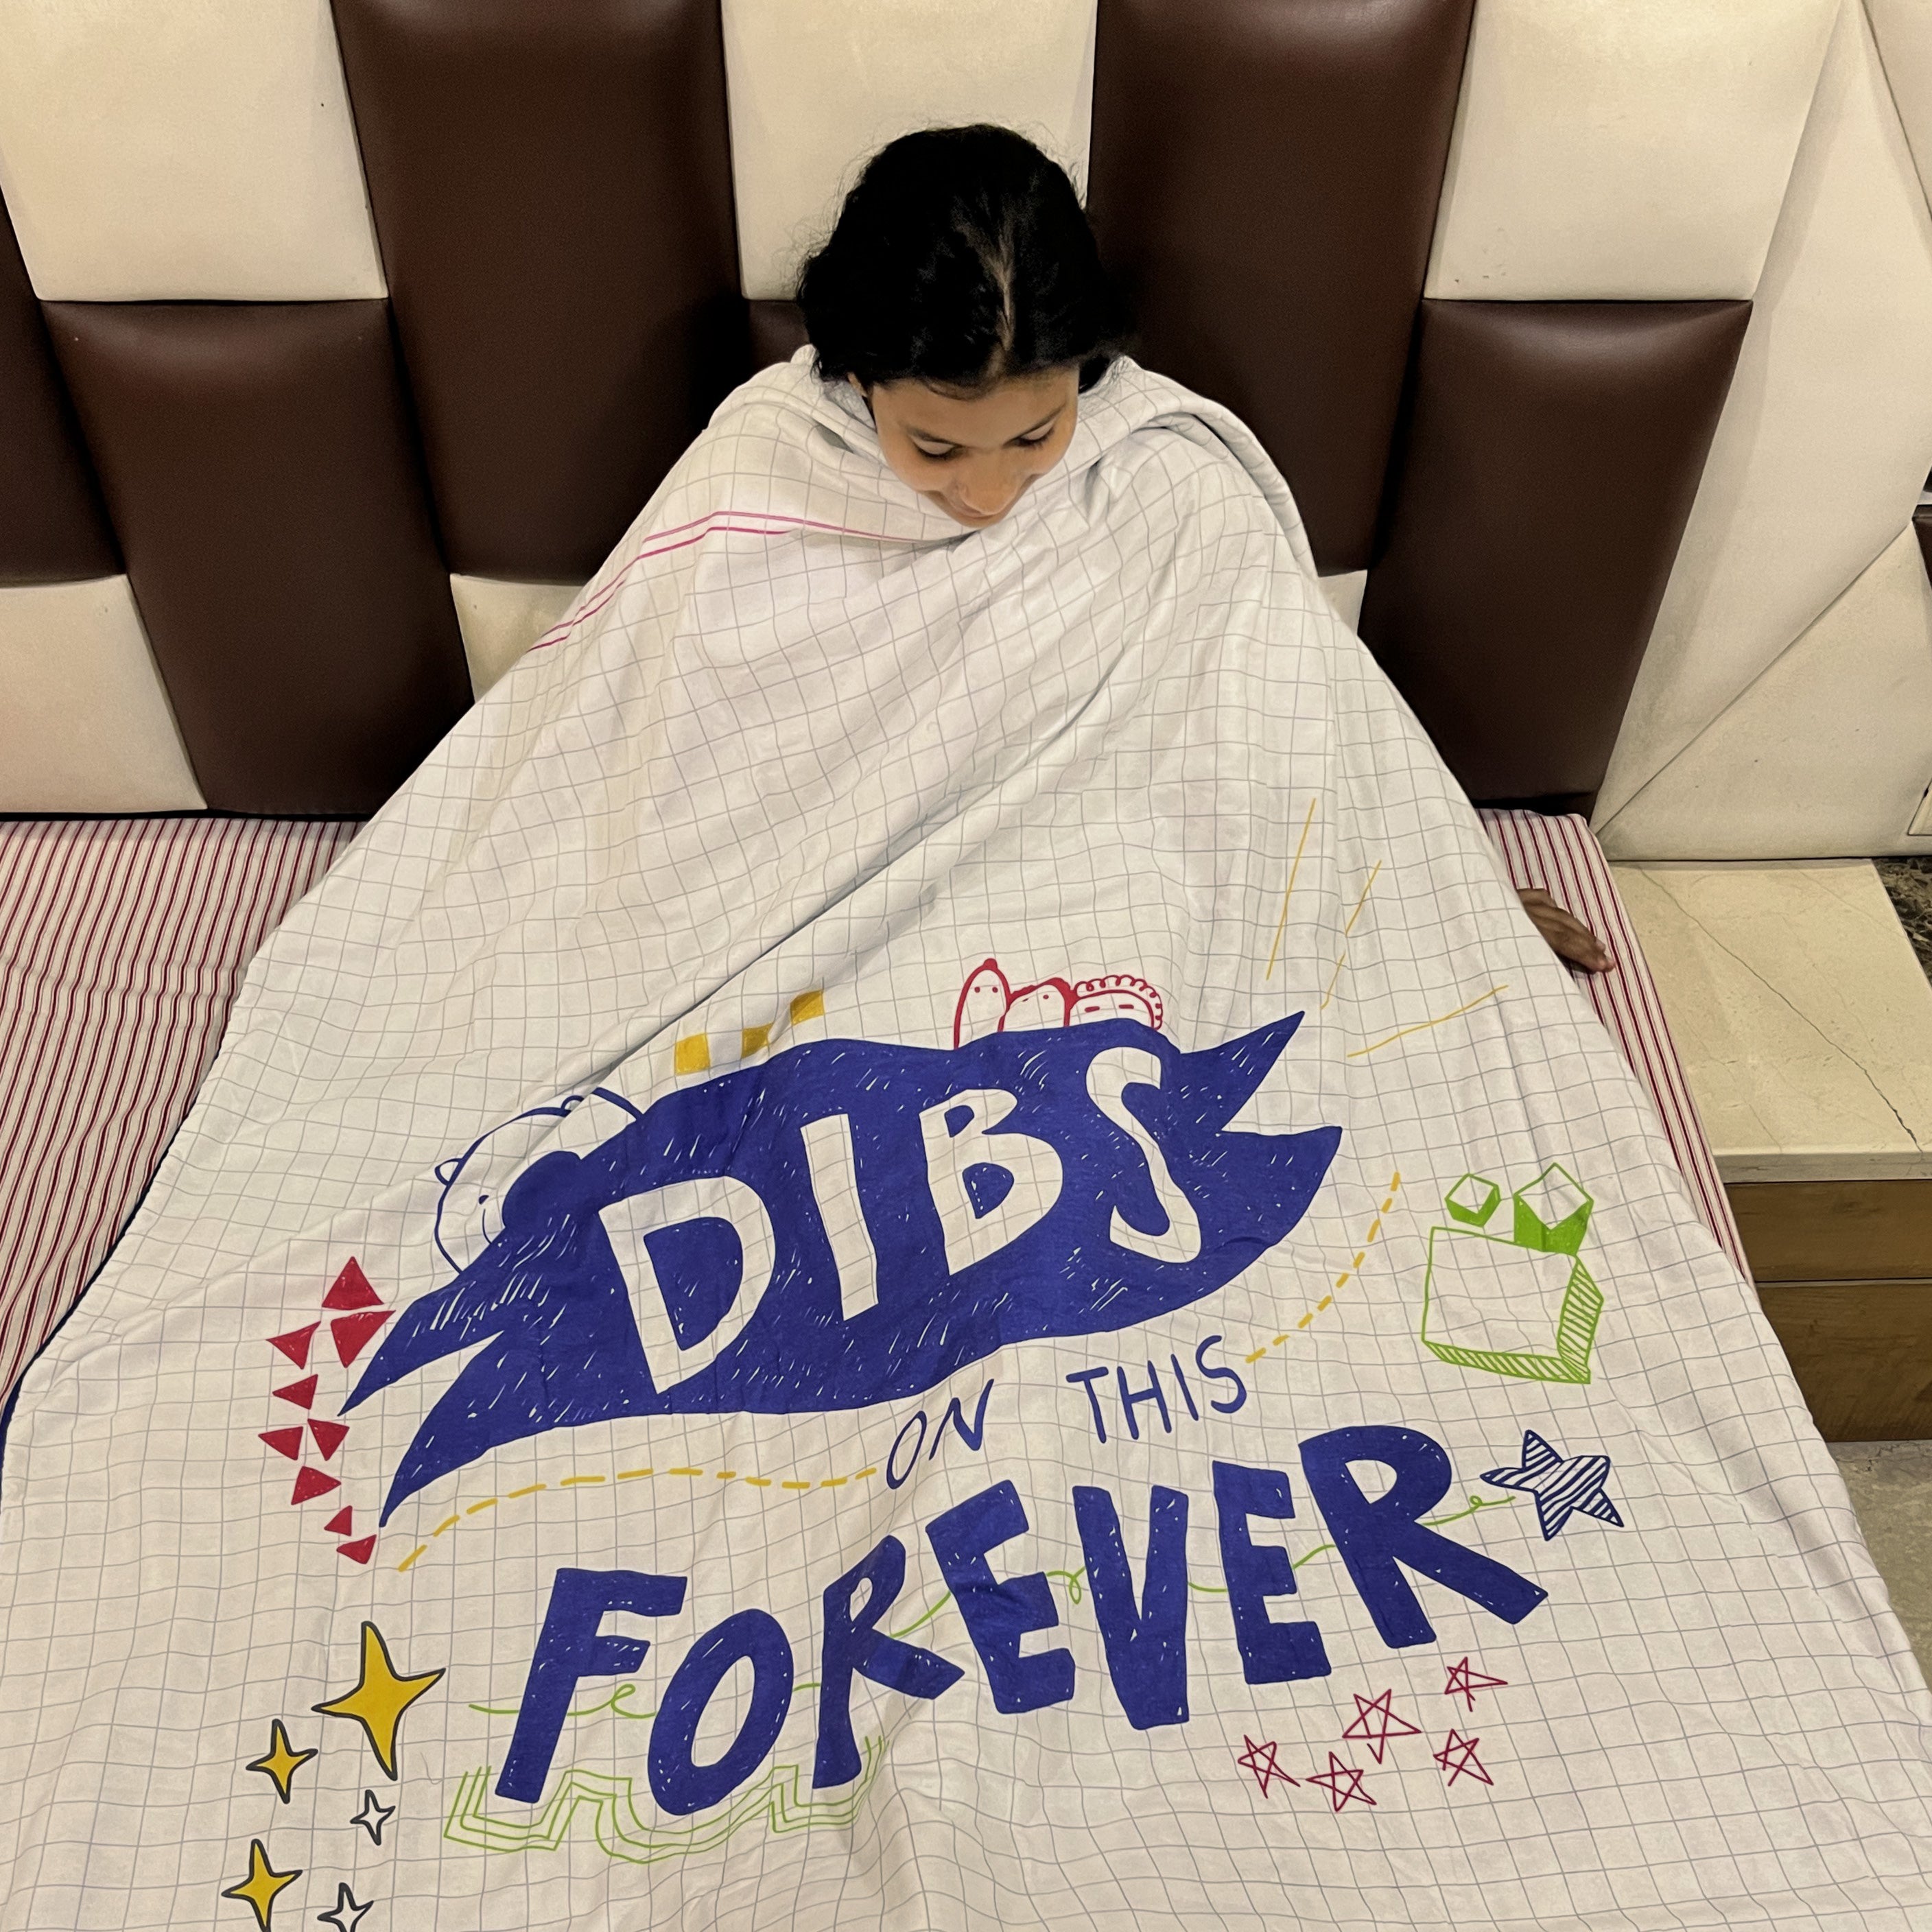 Dibs Forever! Dohar